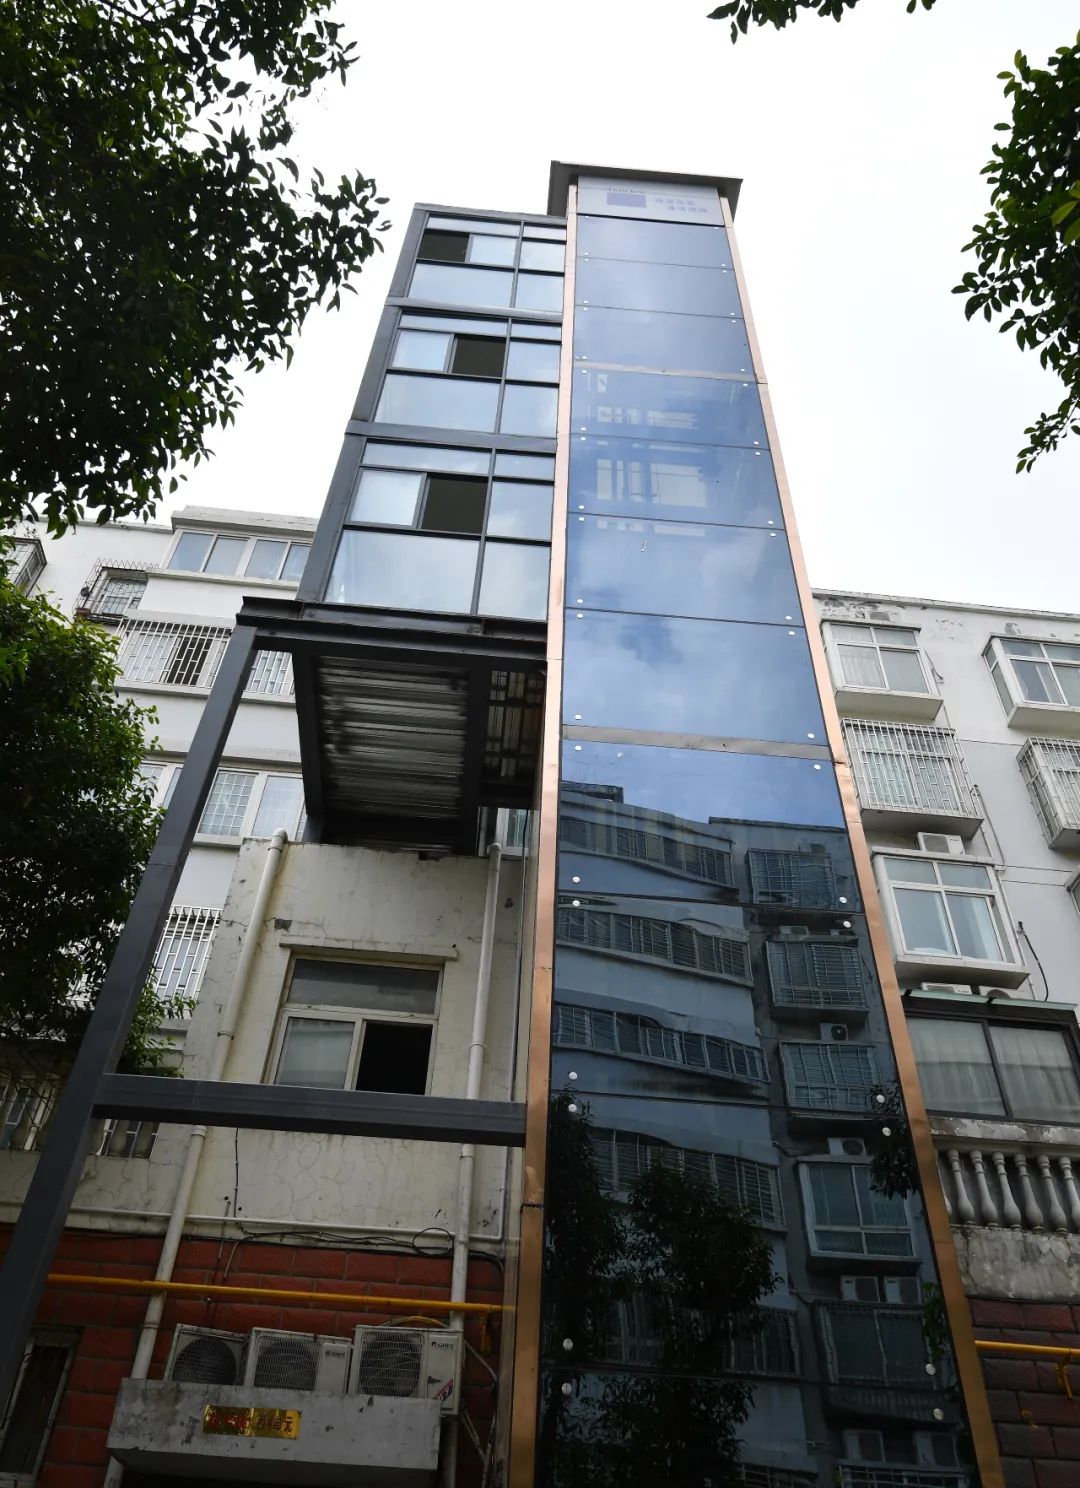 老楼加梯进行时!郑州市内五区既有住宅加装电梯达114部